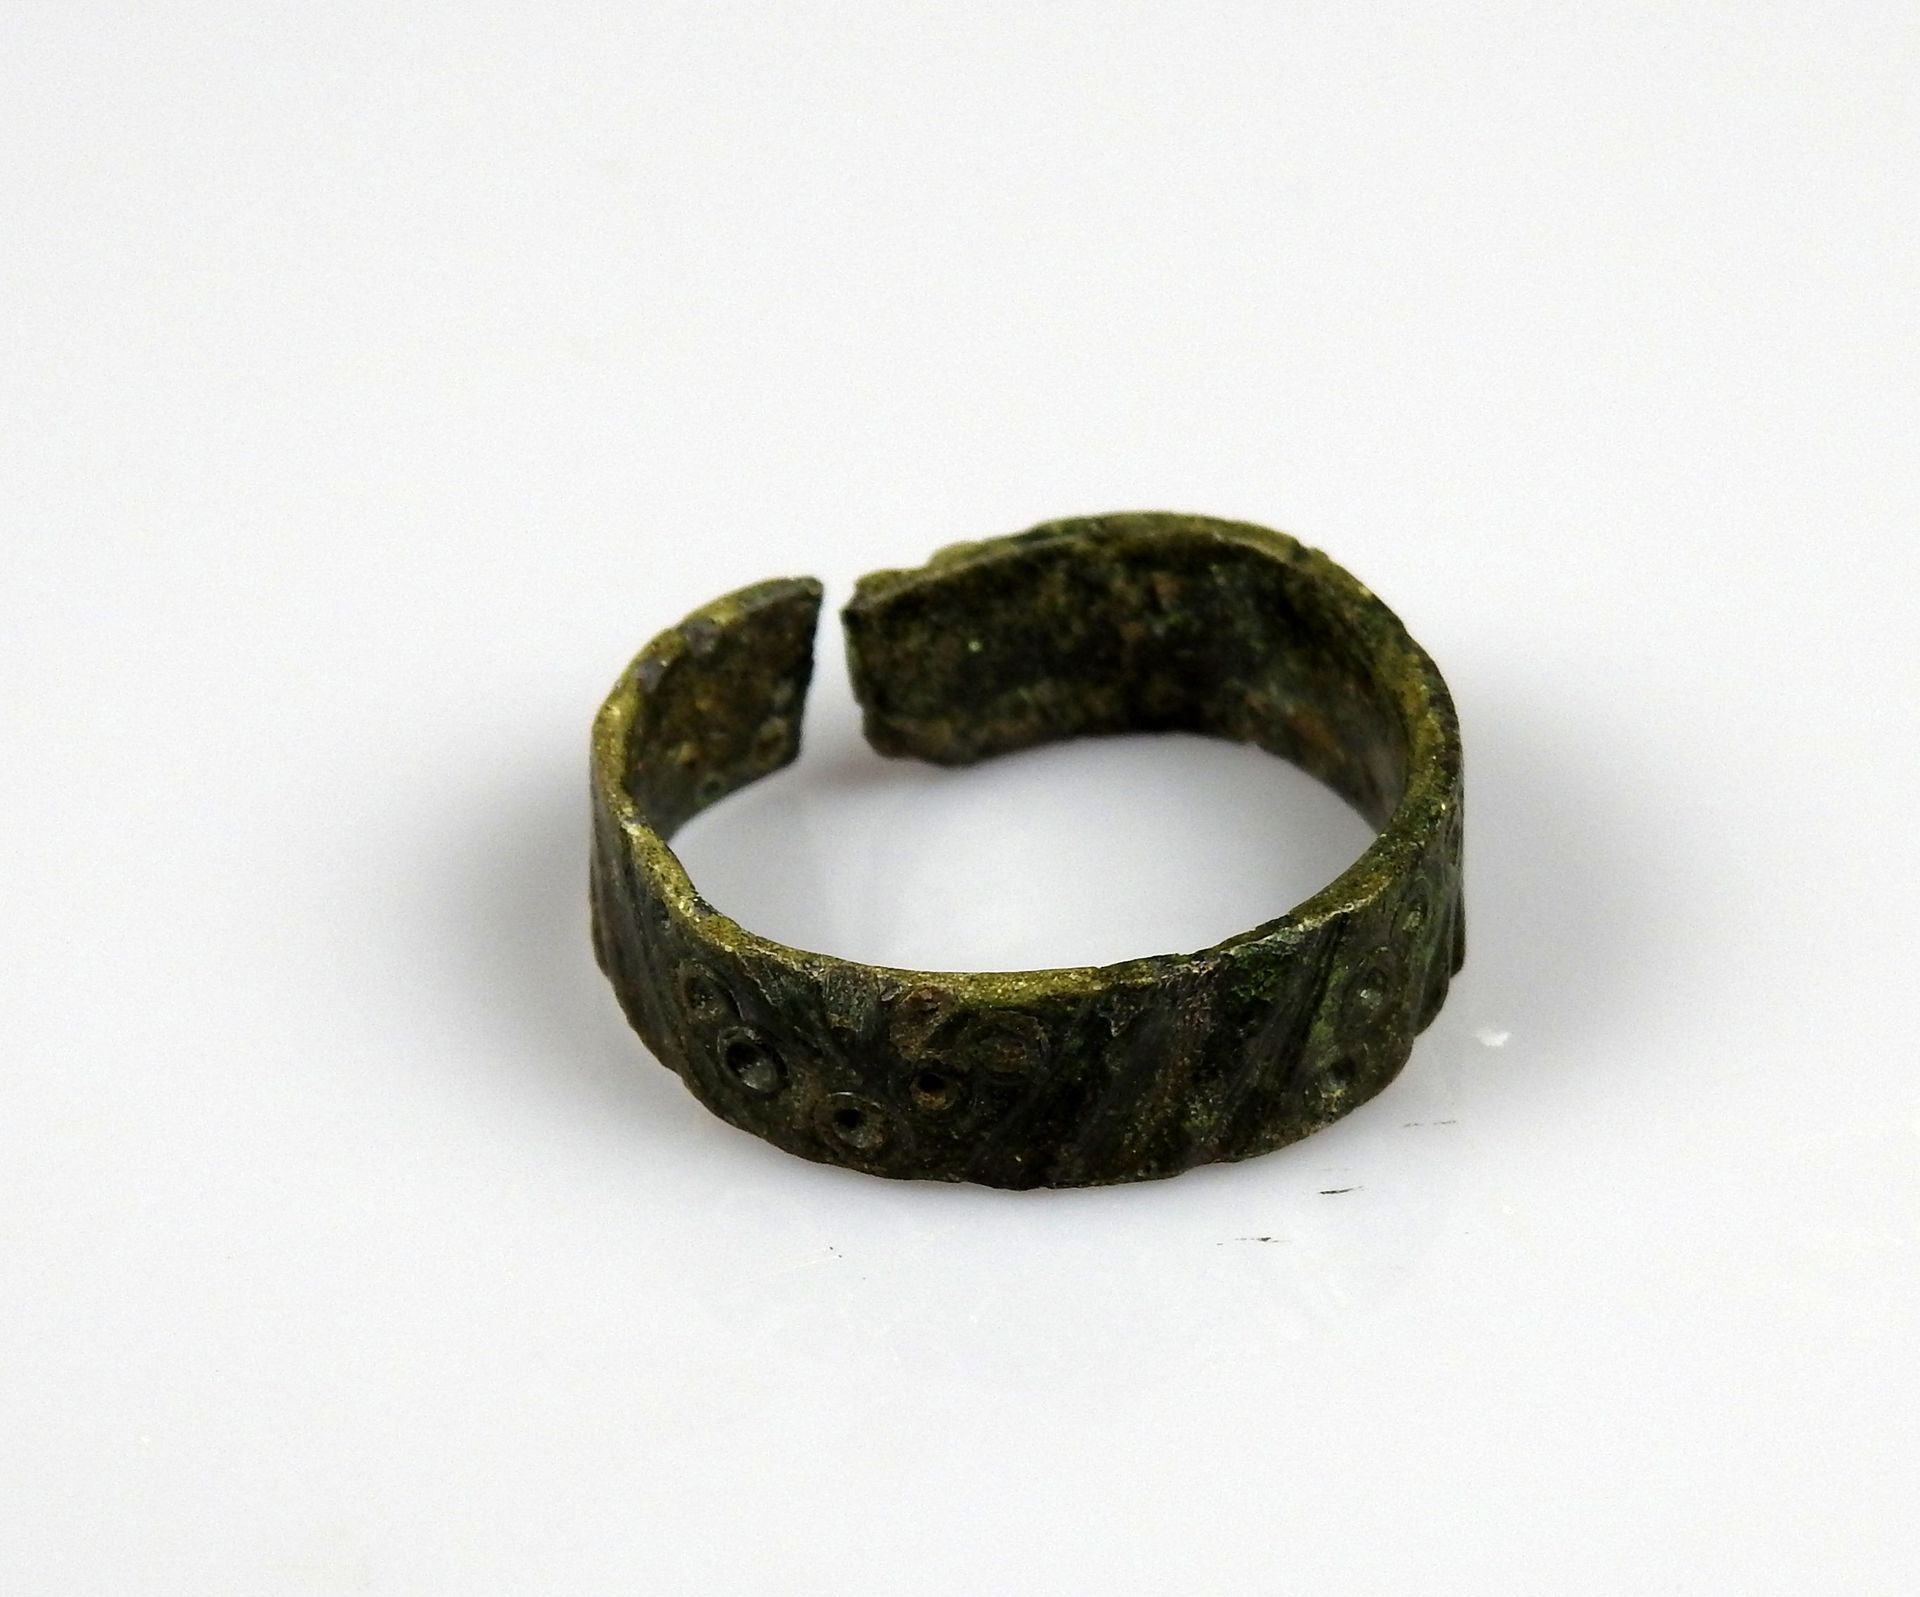 Null 带几何装饰的戒指，装饰有猫眼的图案

前19世纪某省著名人士的收藏

青铜指头尺寸56

罗马时期